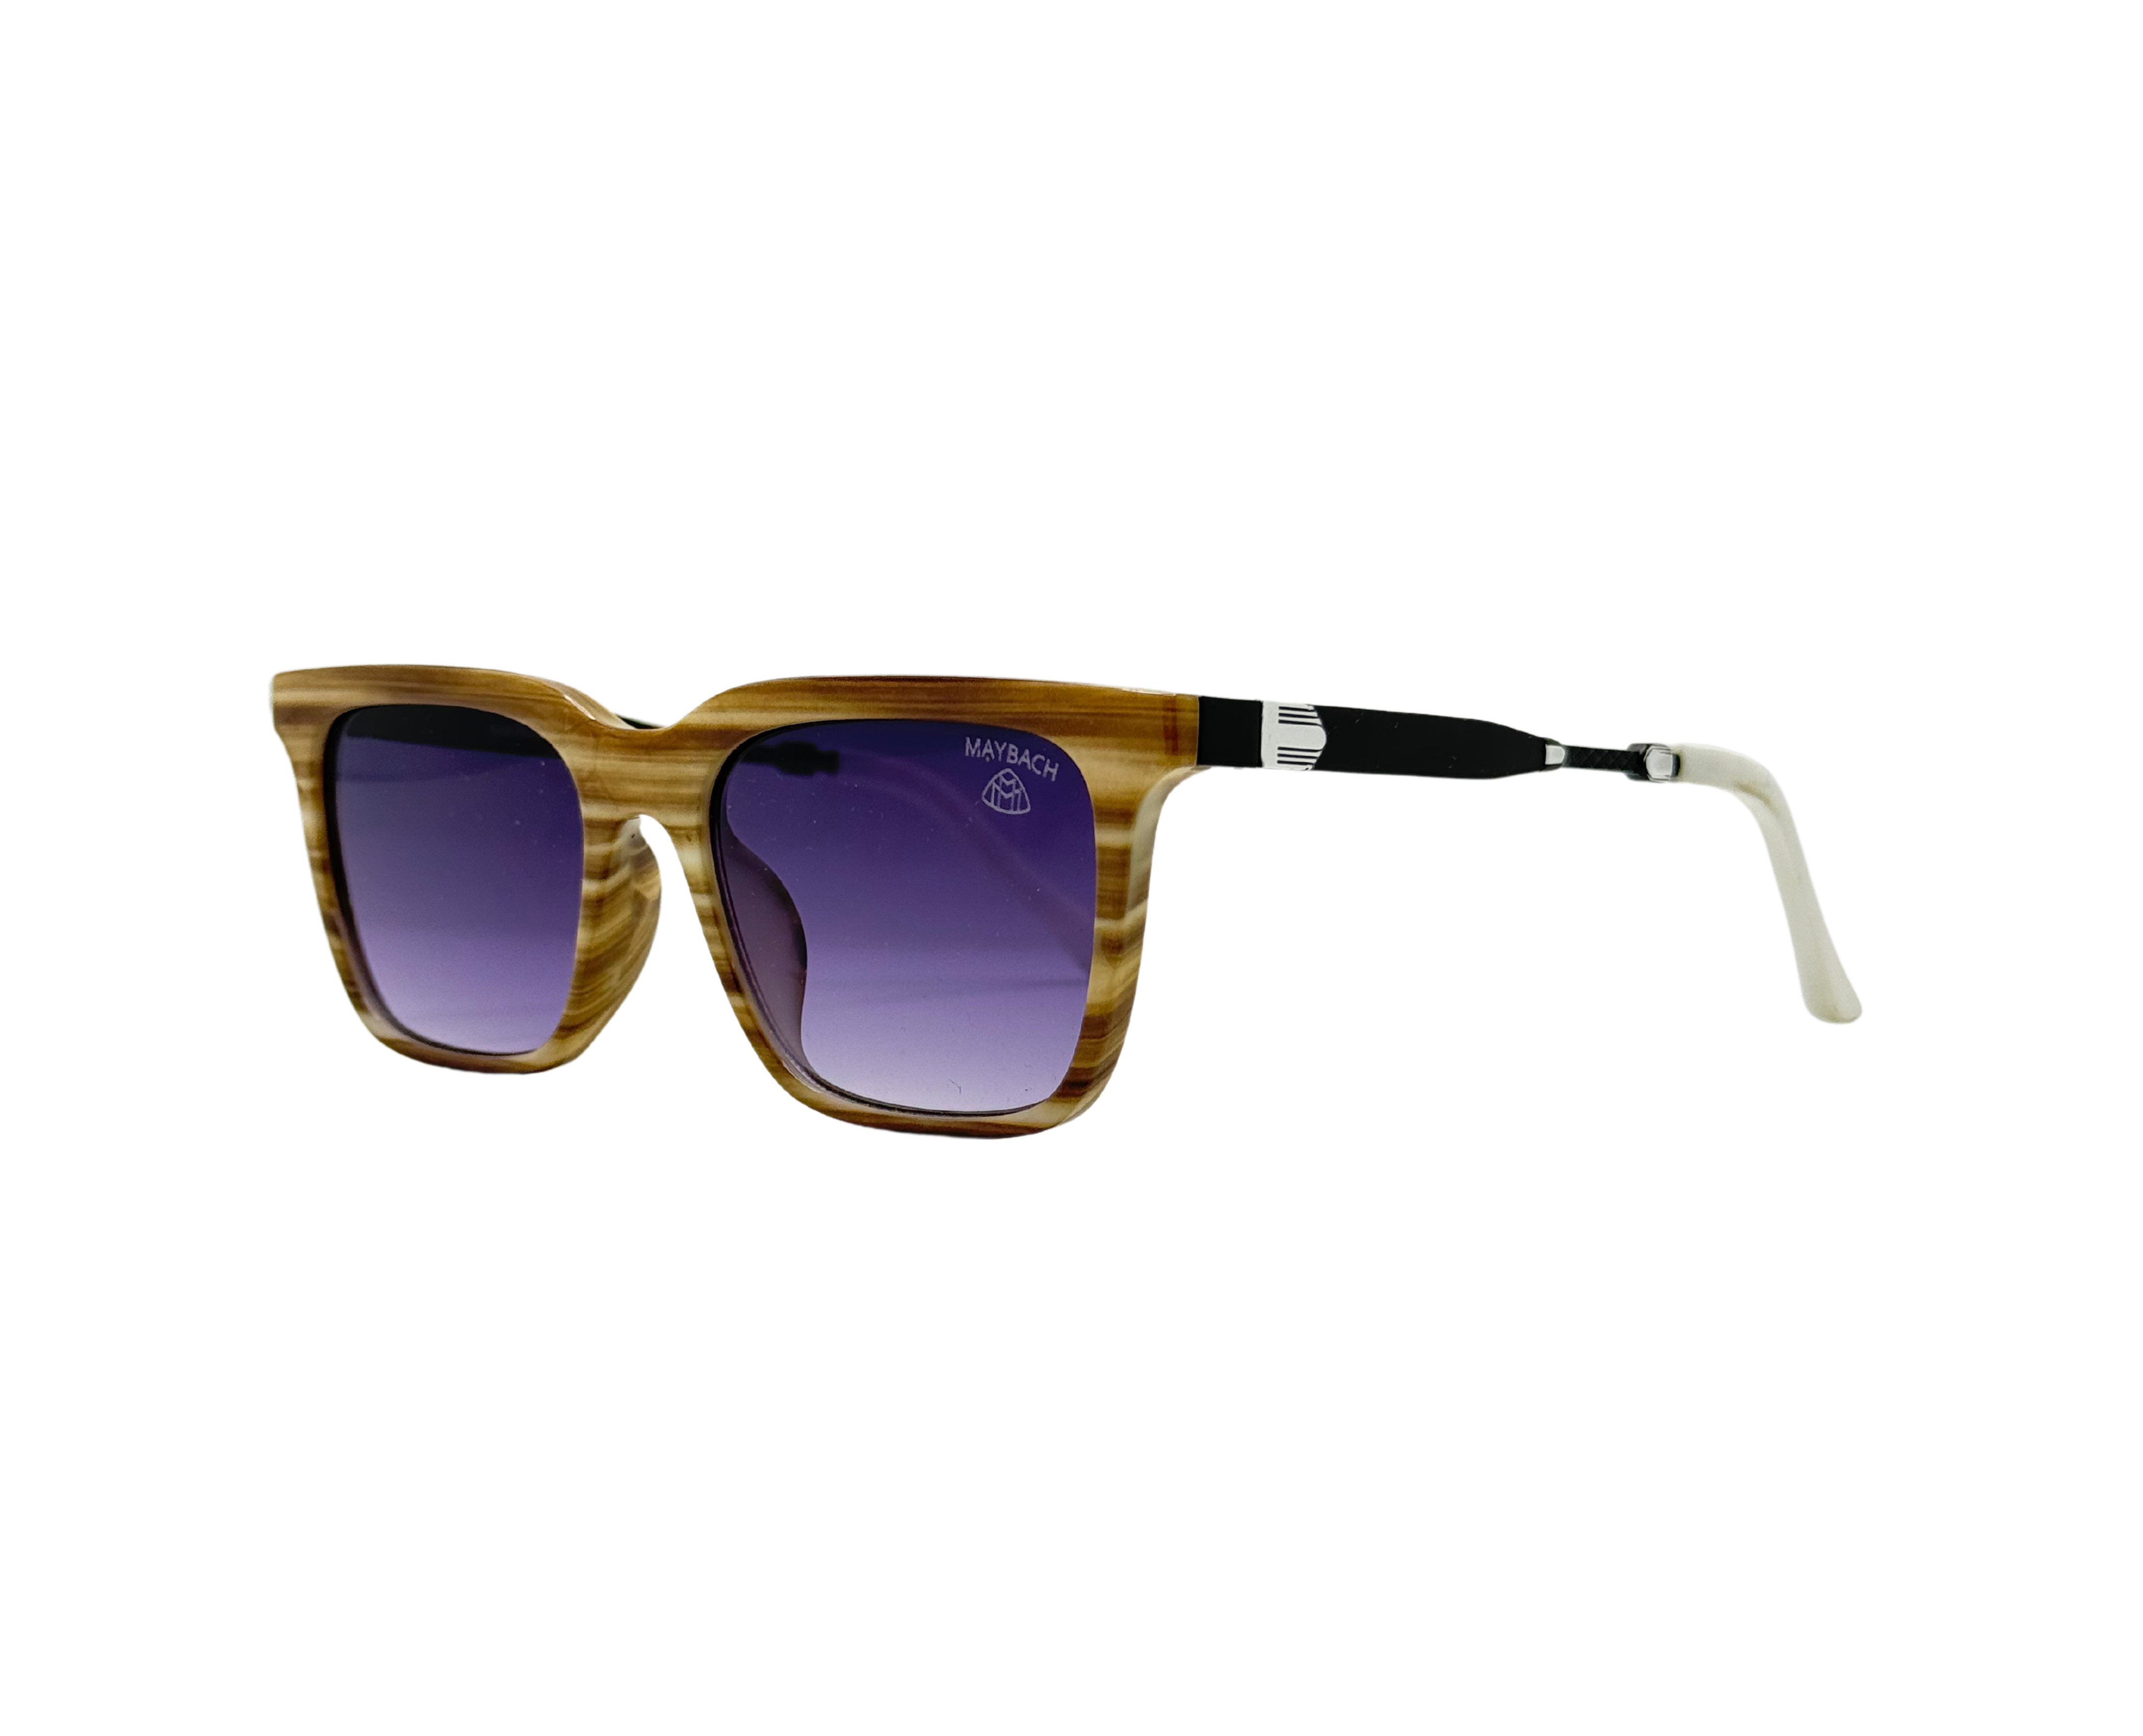 NS Deluxe - 1228 - Tortoise - Sunglasses